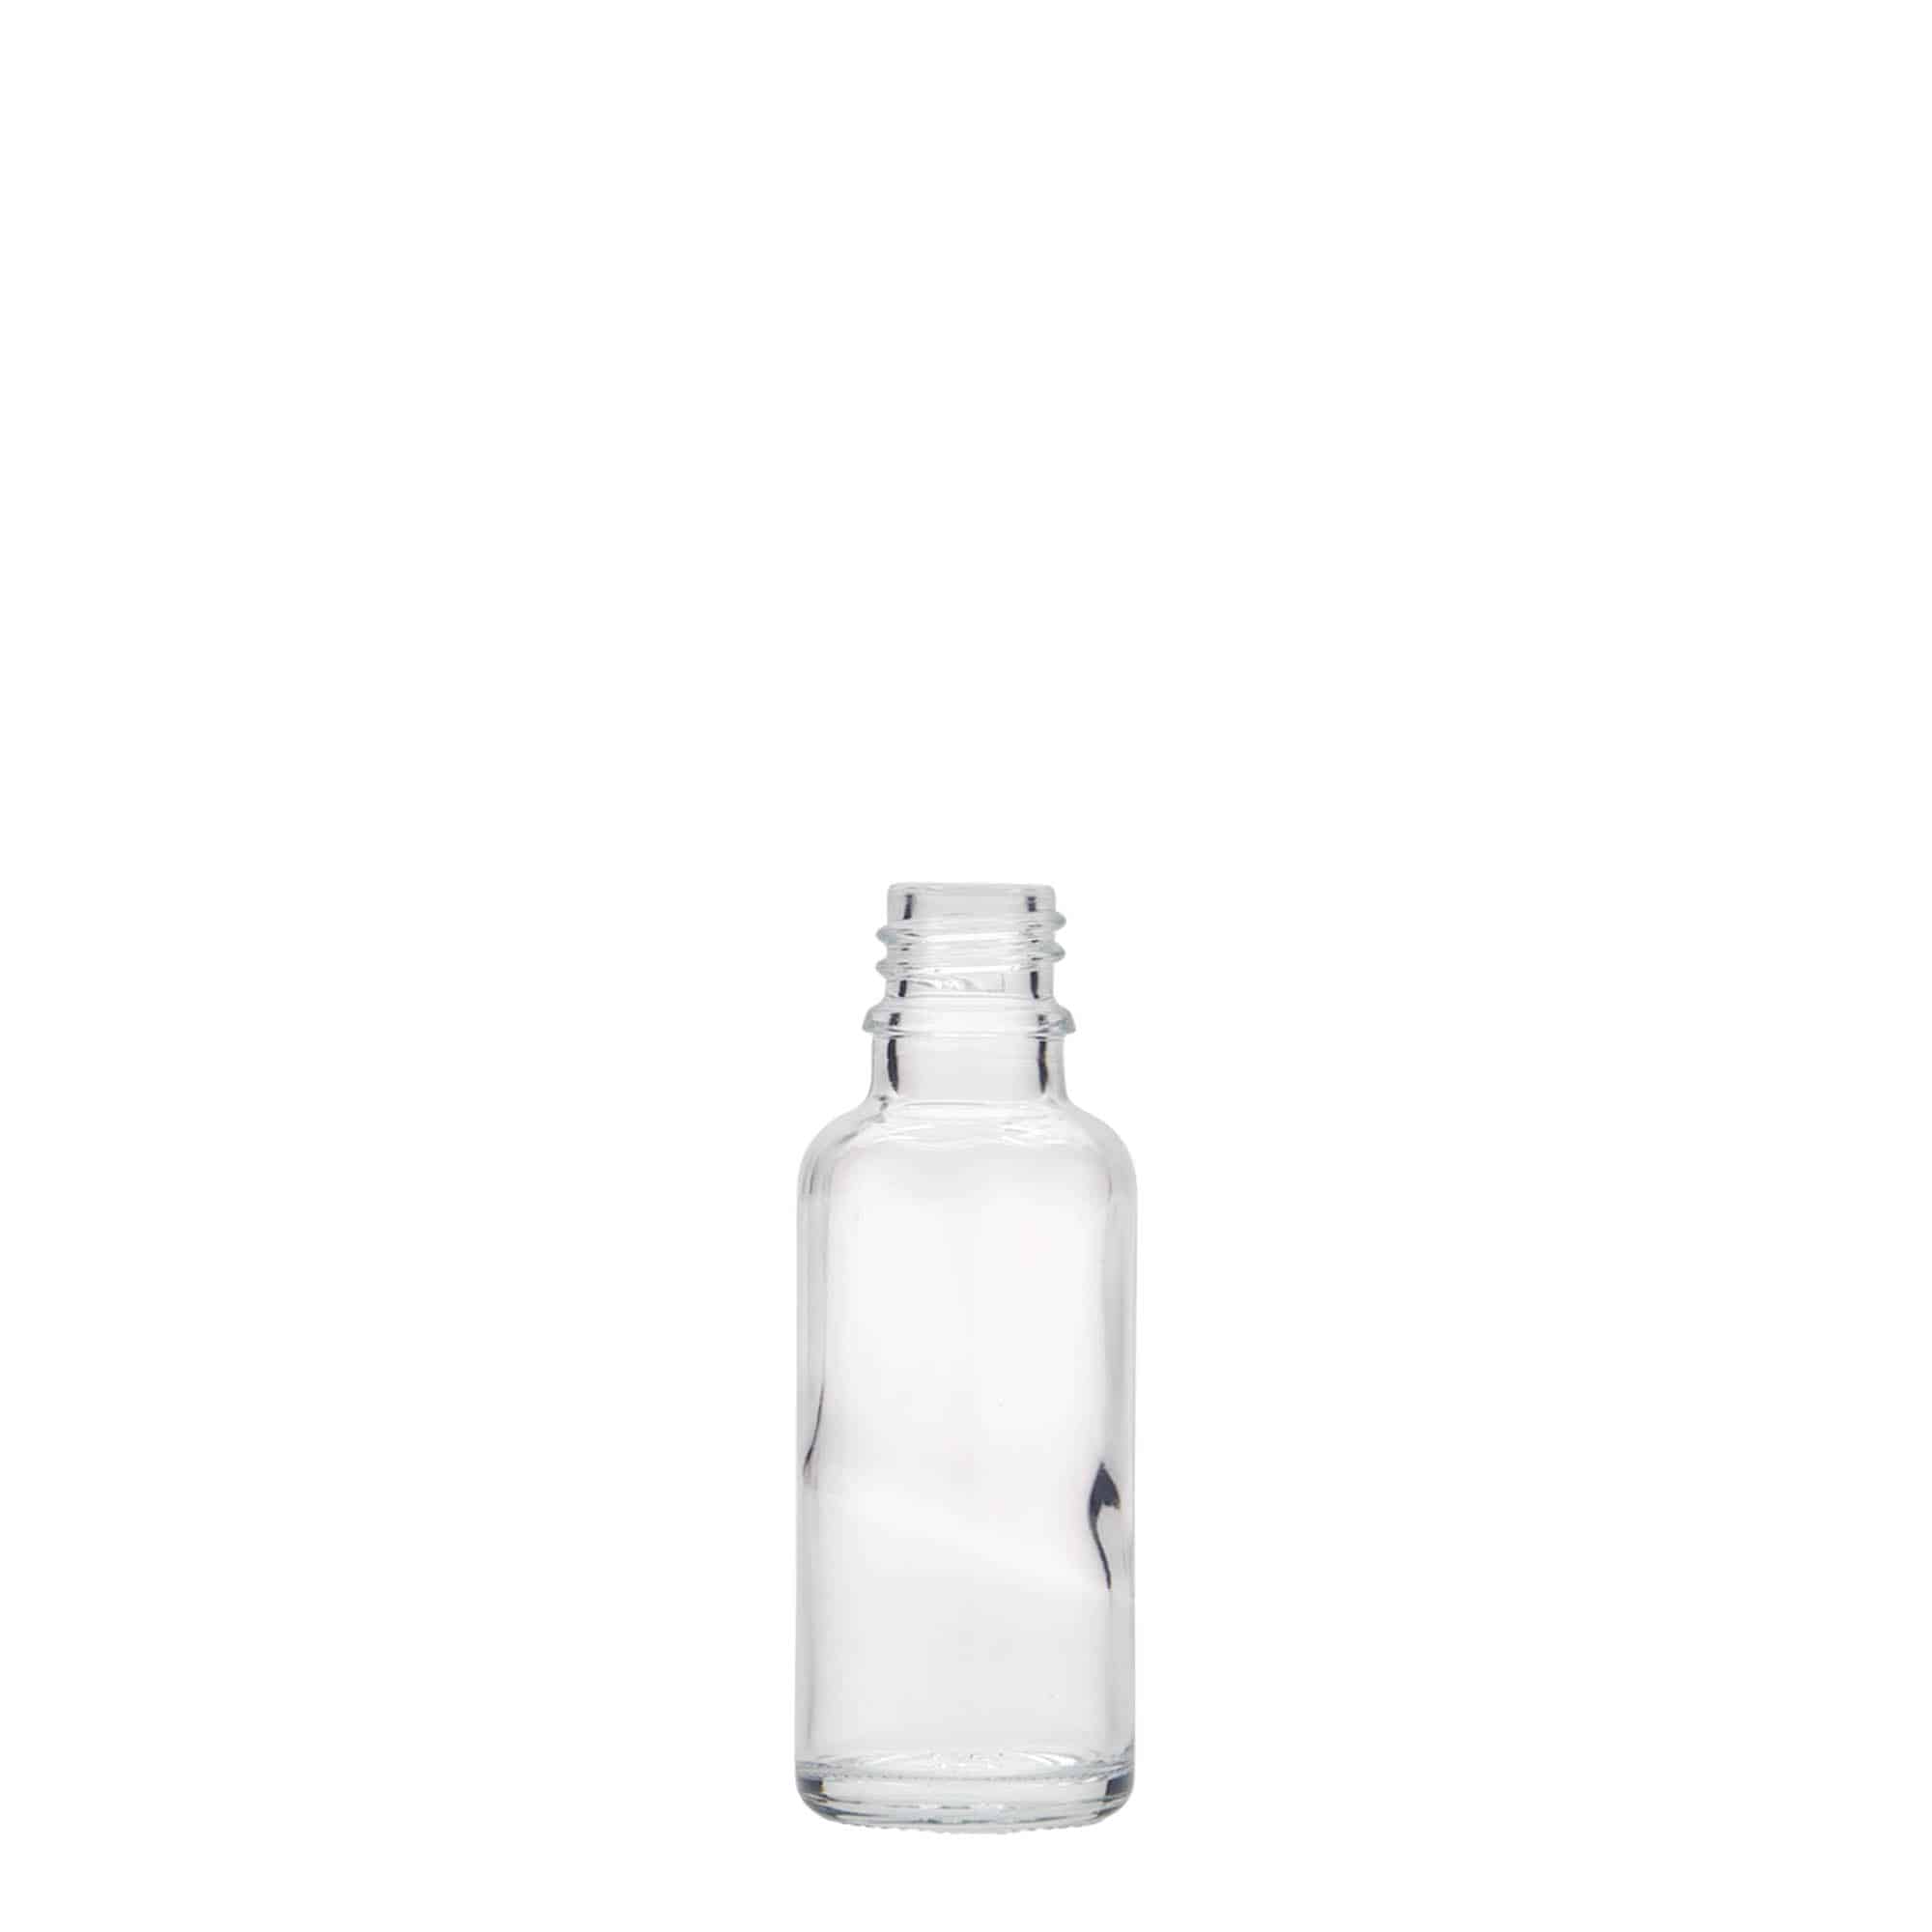 30 ml medicinflaske, glas, åbning: DIN 18